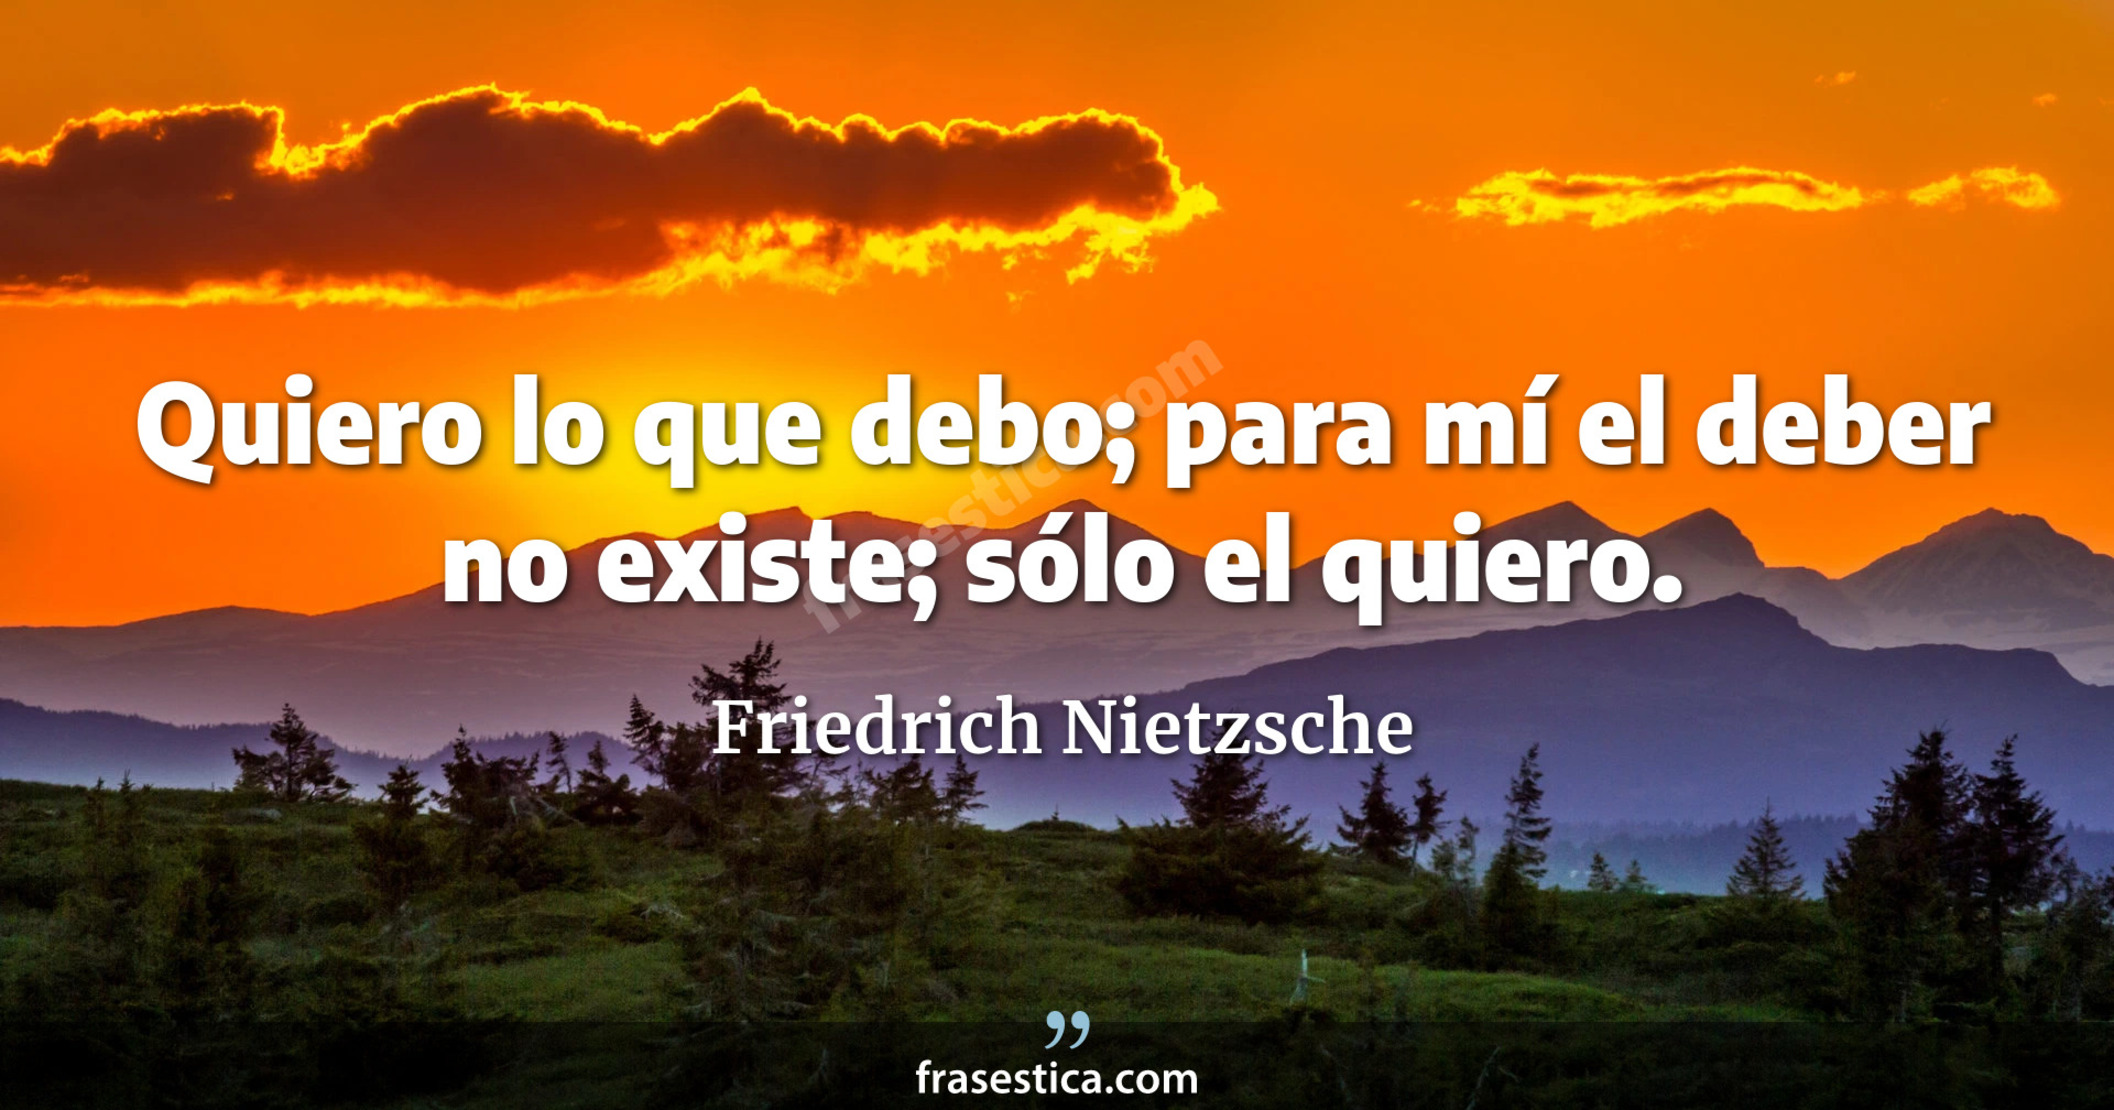 Quiero lo que debo; para mí el deber no existe; sólo el quiero. - Friedrich Nietzsche